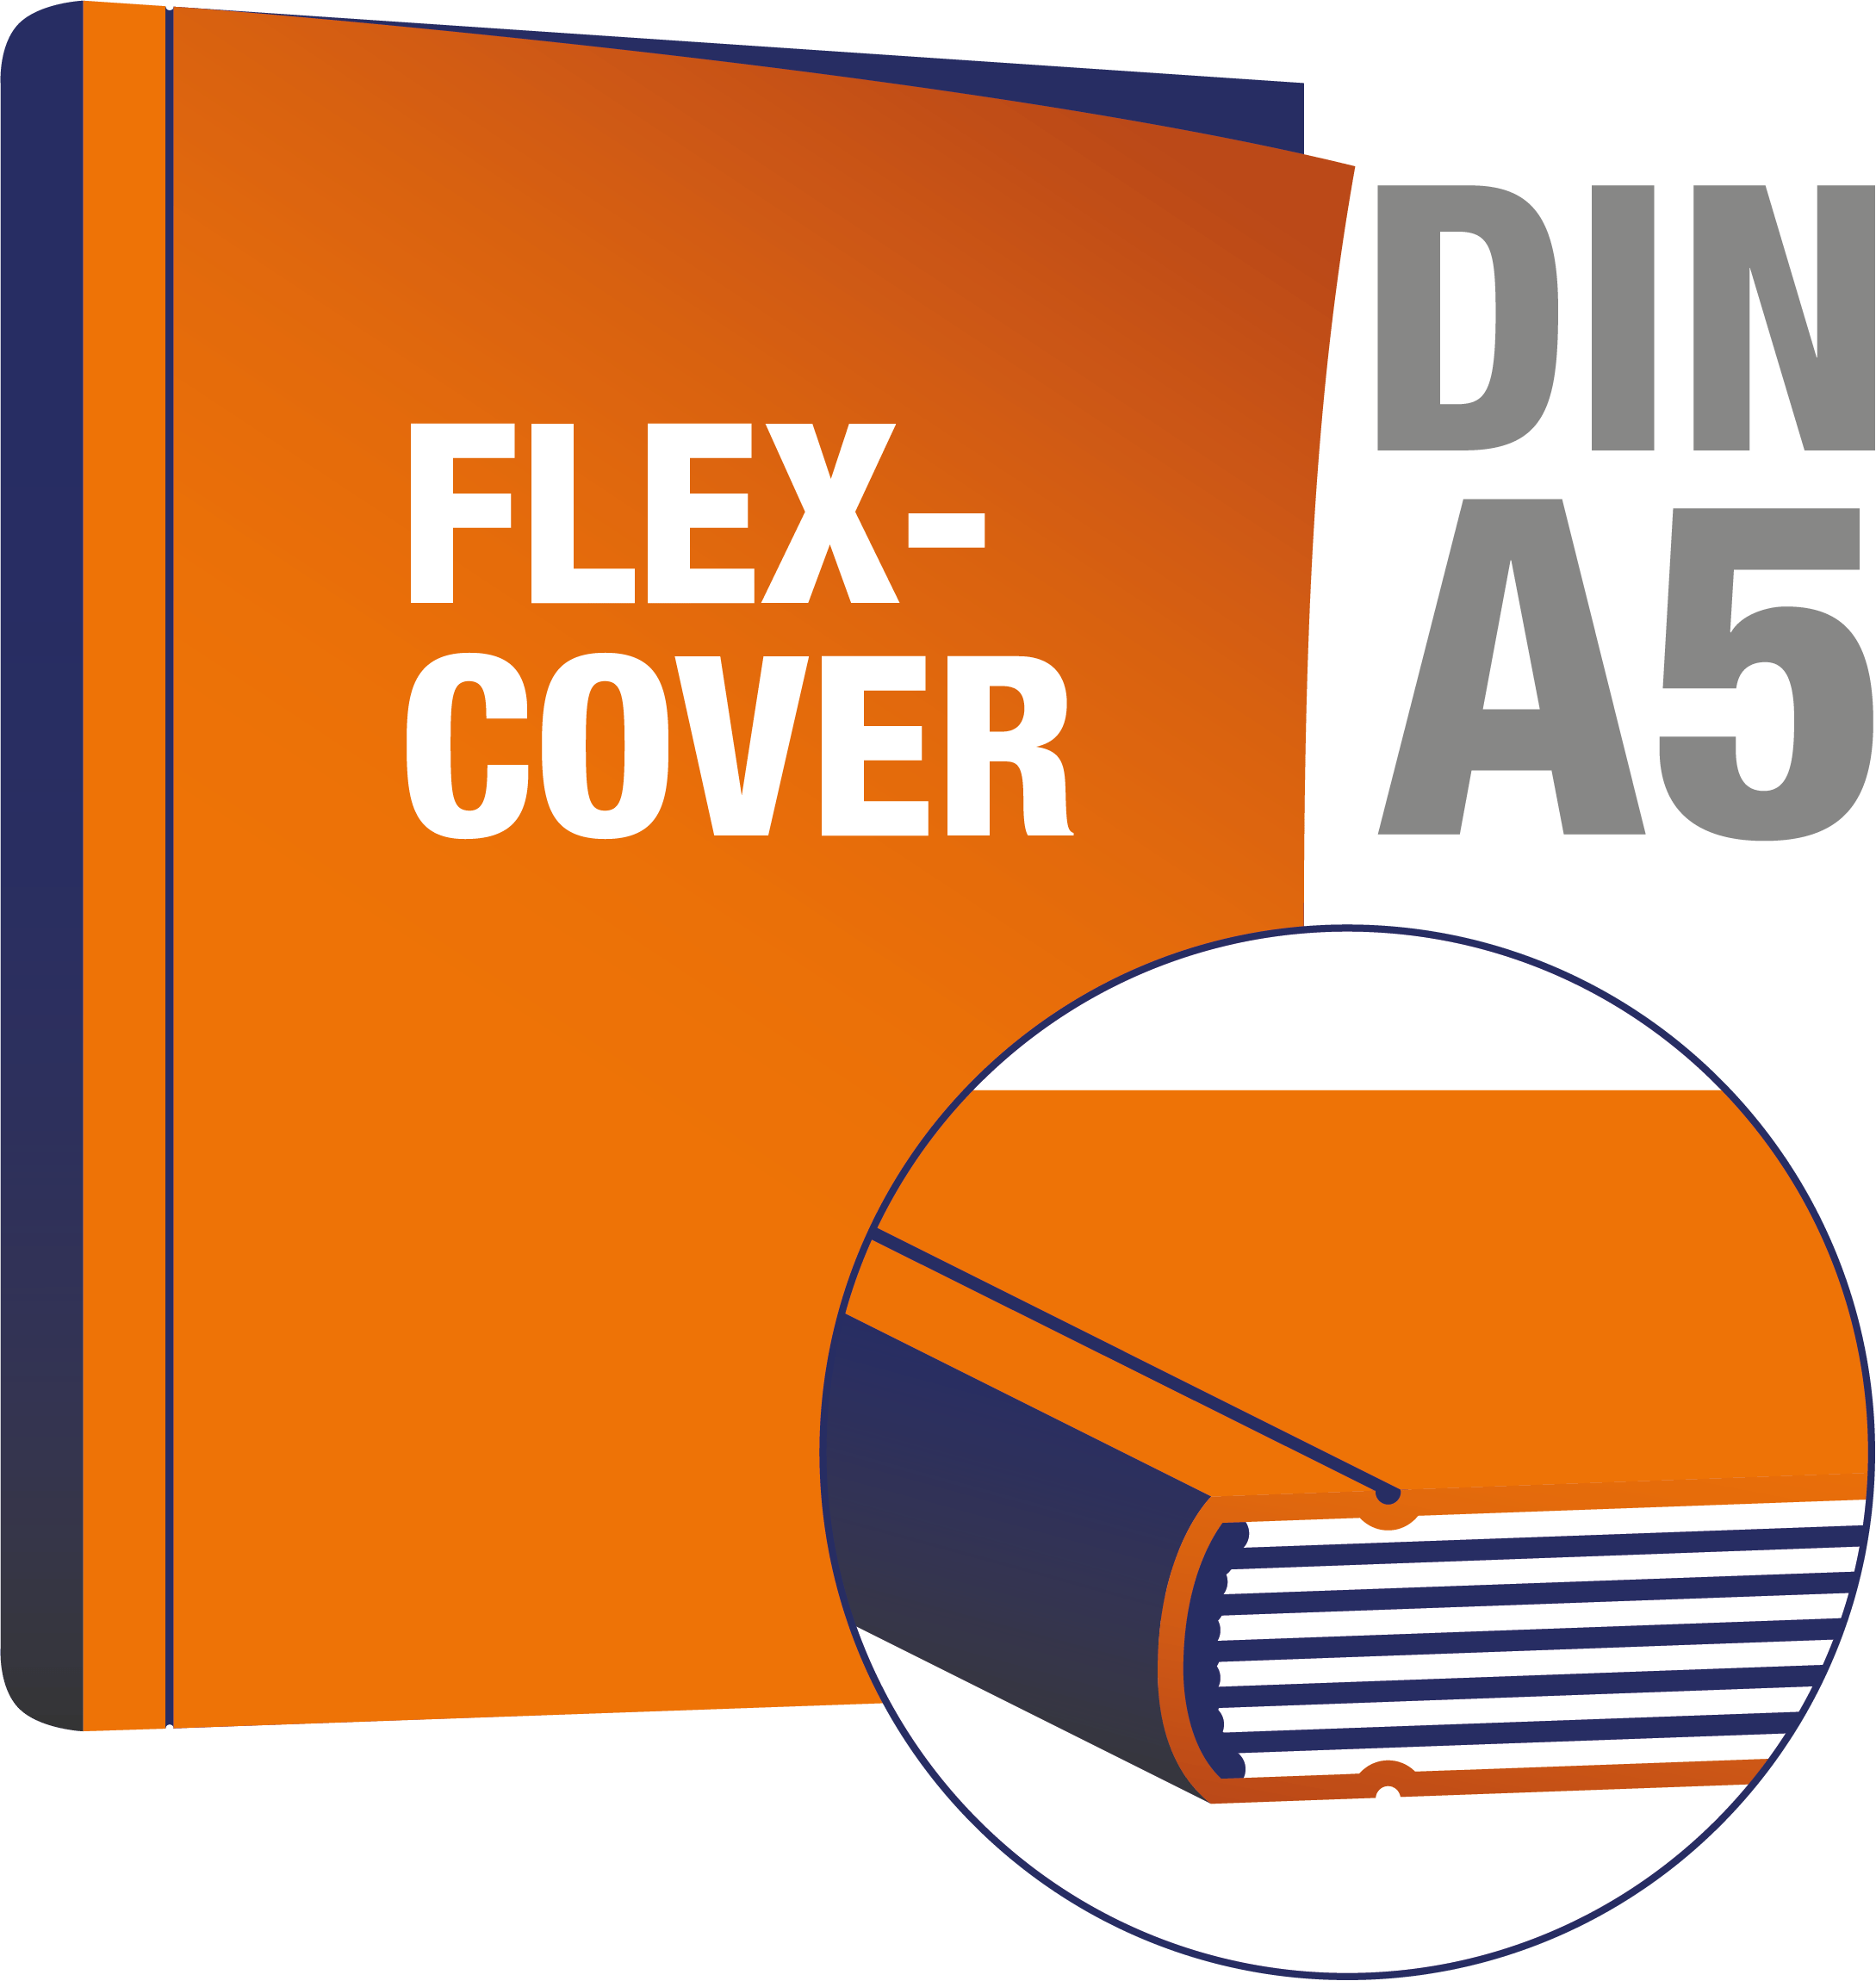 Flexcover DIn A5 drucken